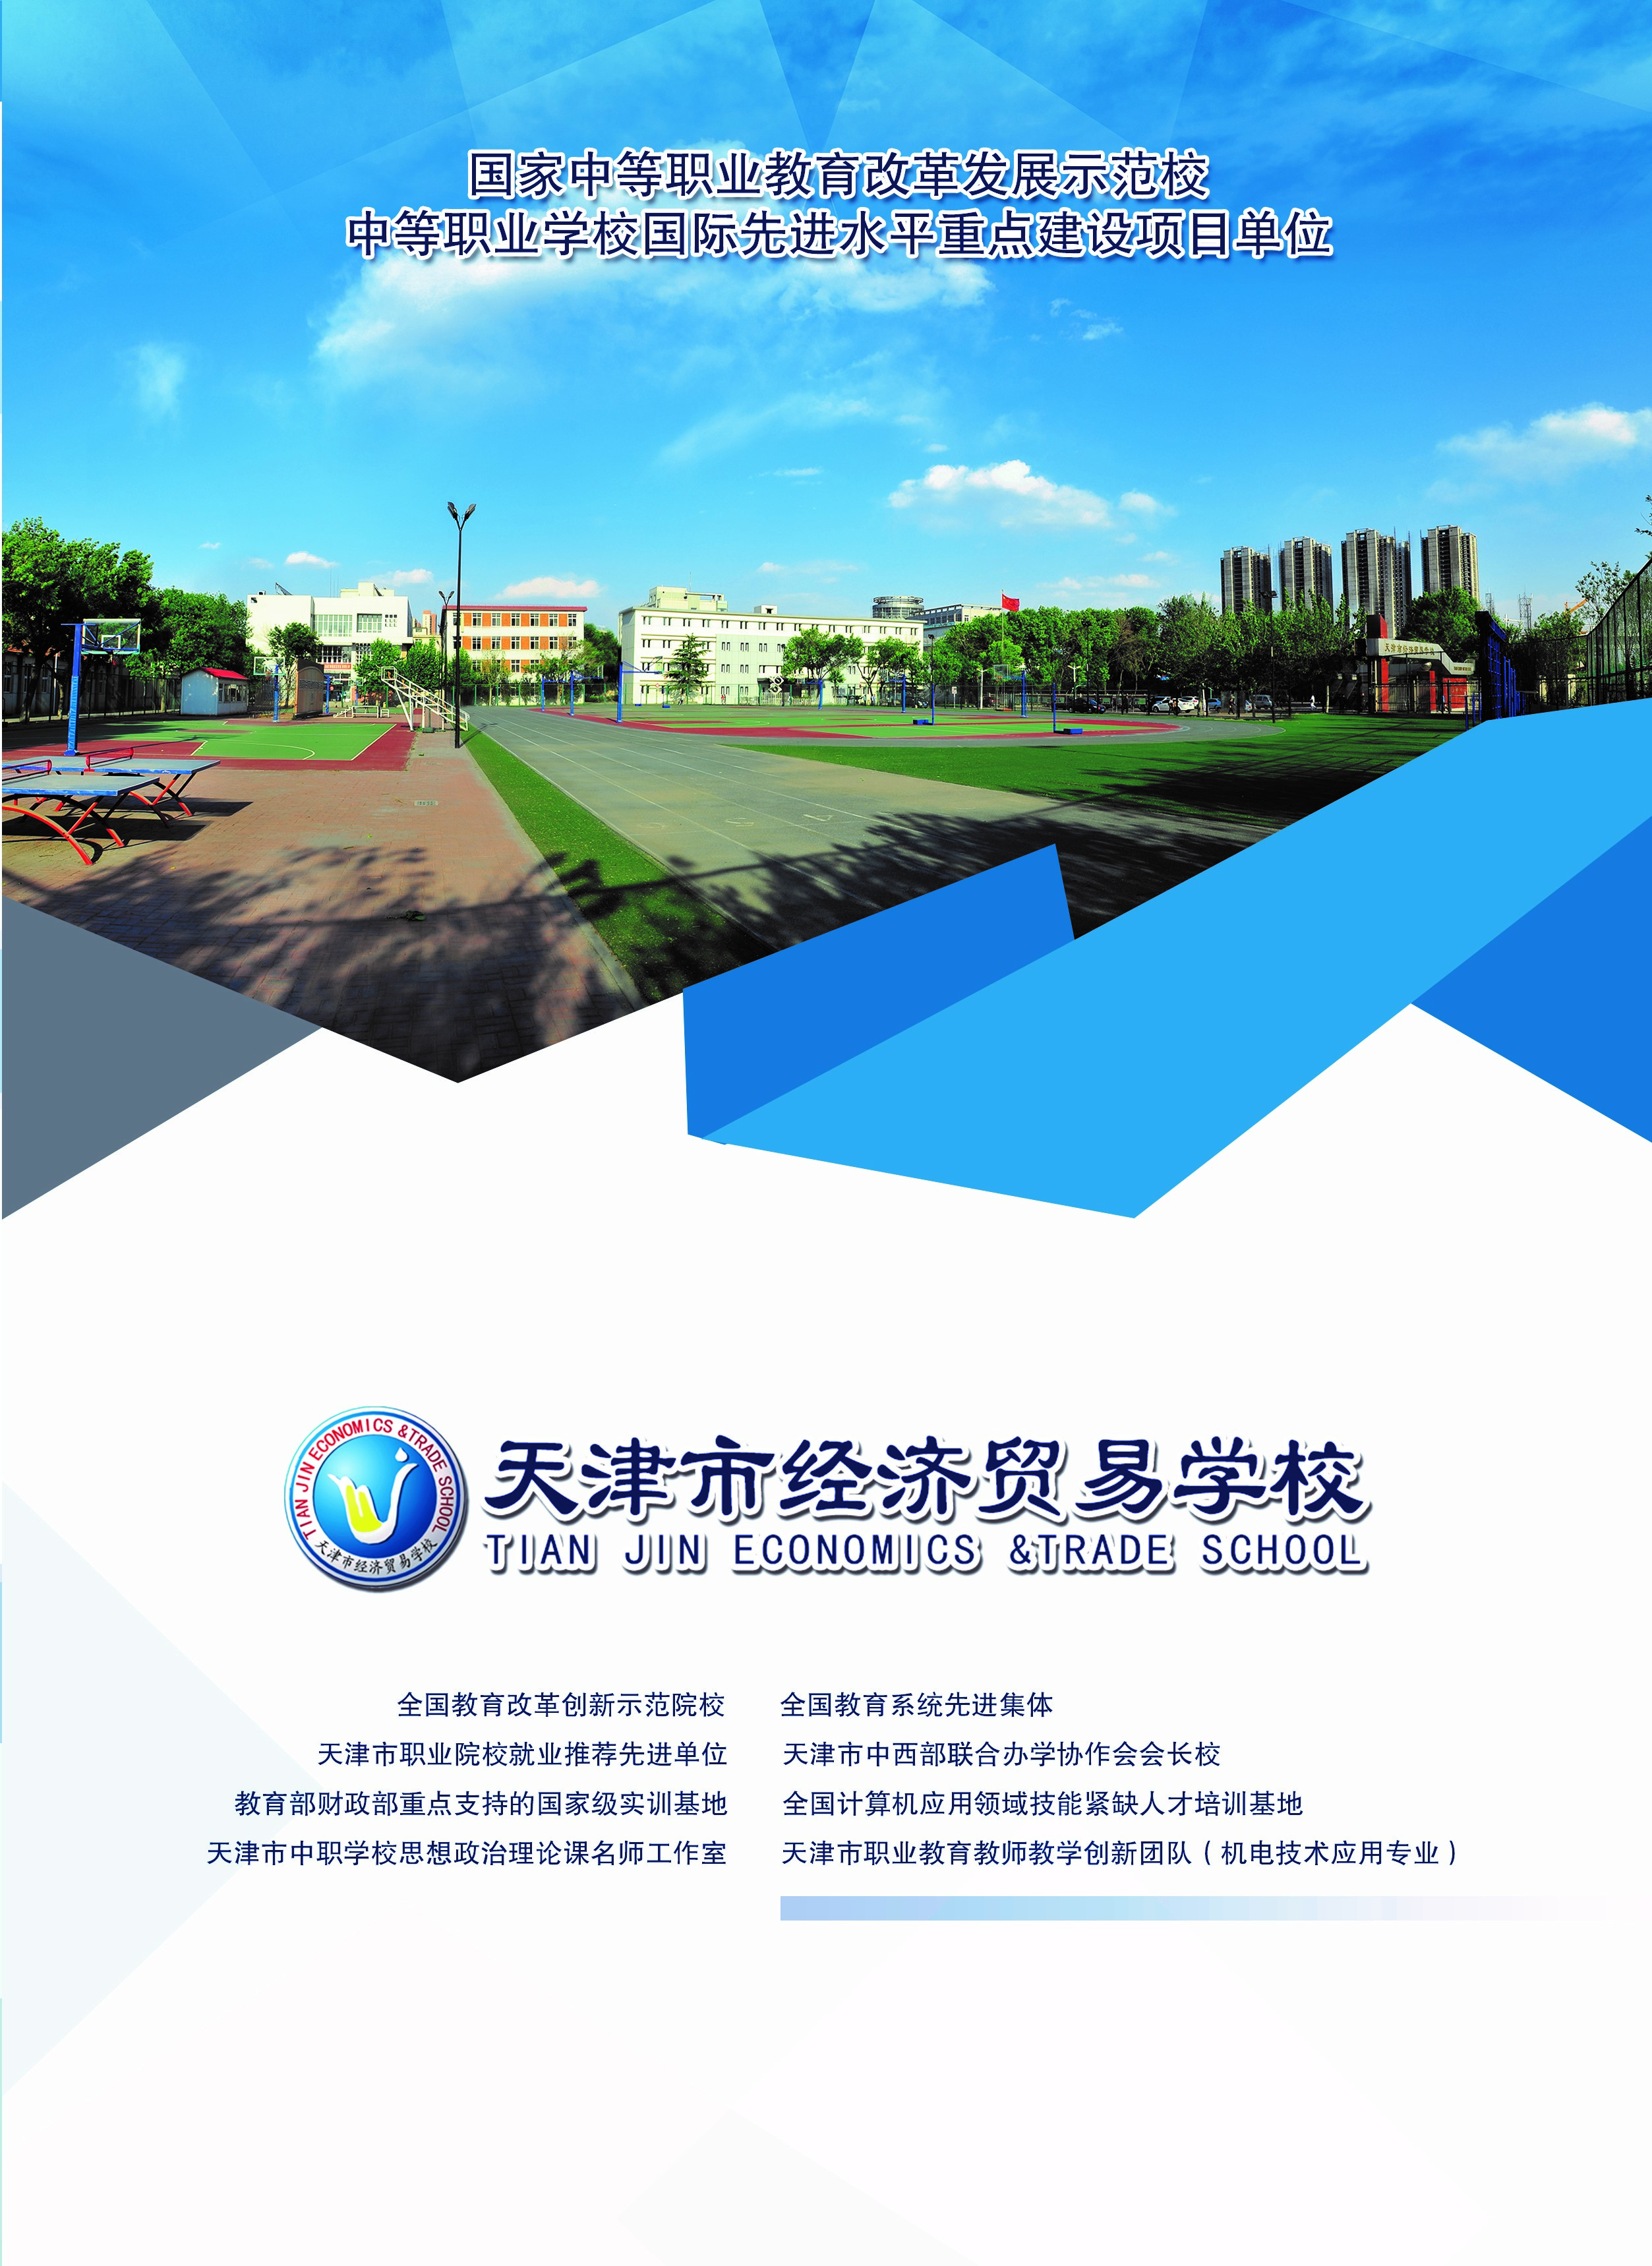 2021年天津市经济贸易学校招生简章(图1)